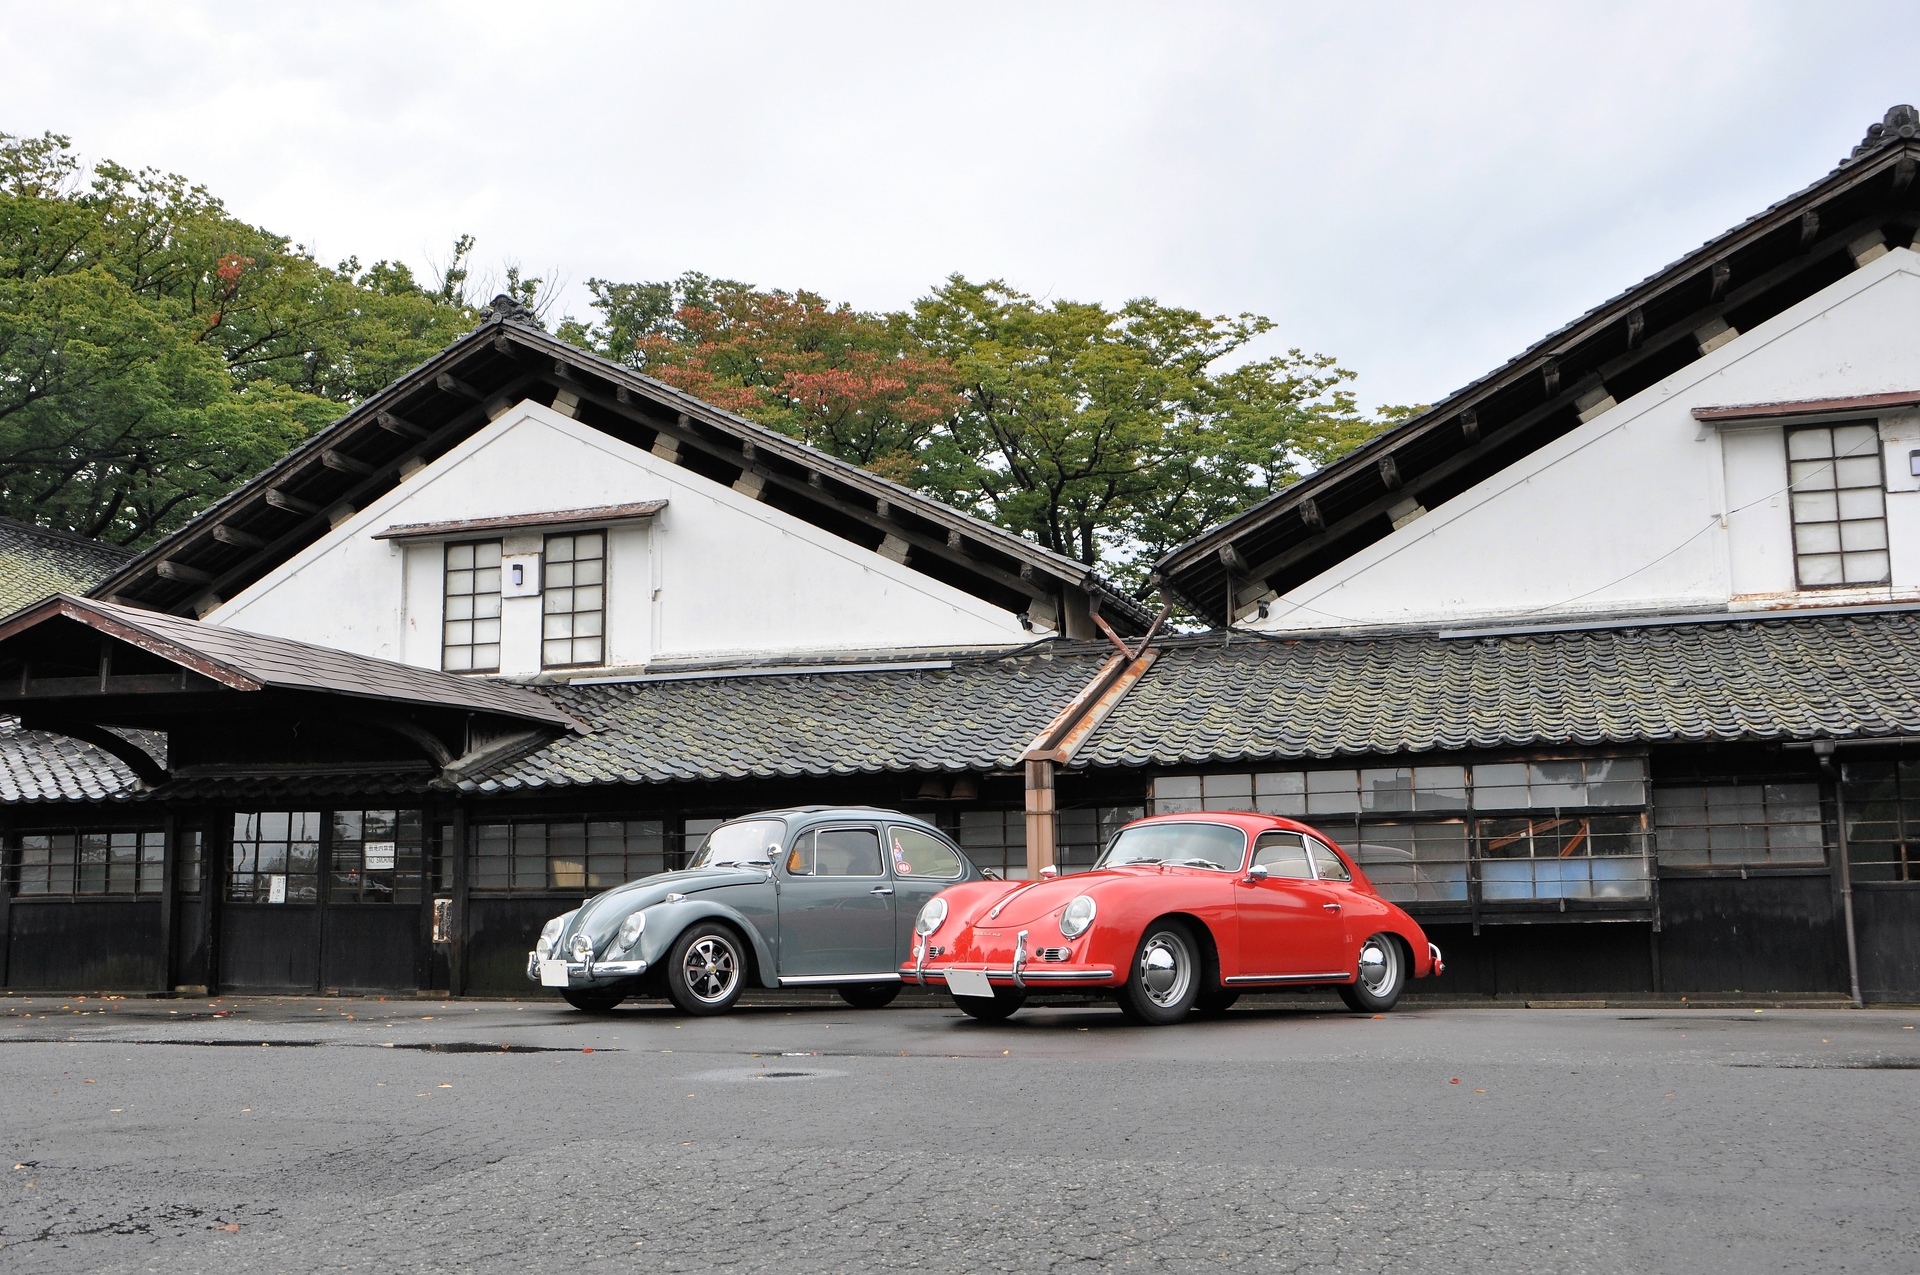 日本の風景 旧車の似合う景色 壁紙19x1275 壁紙館